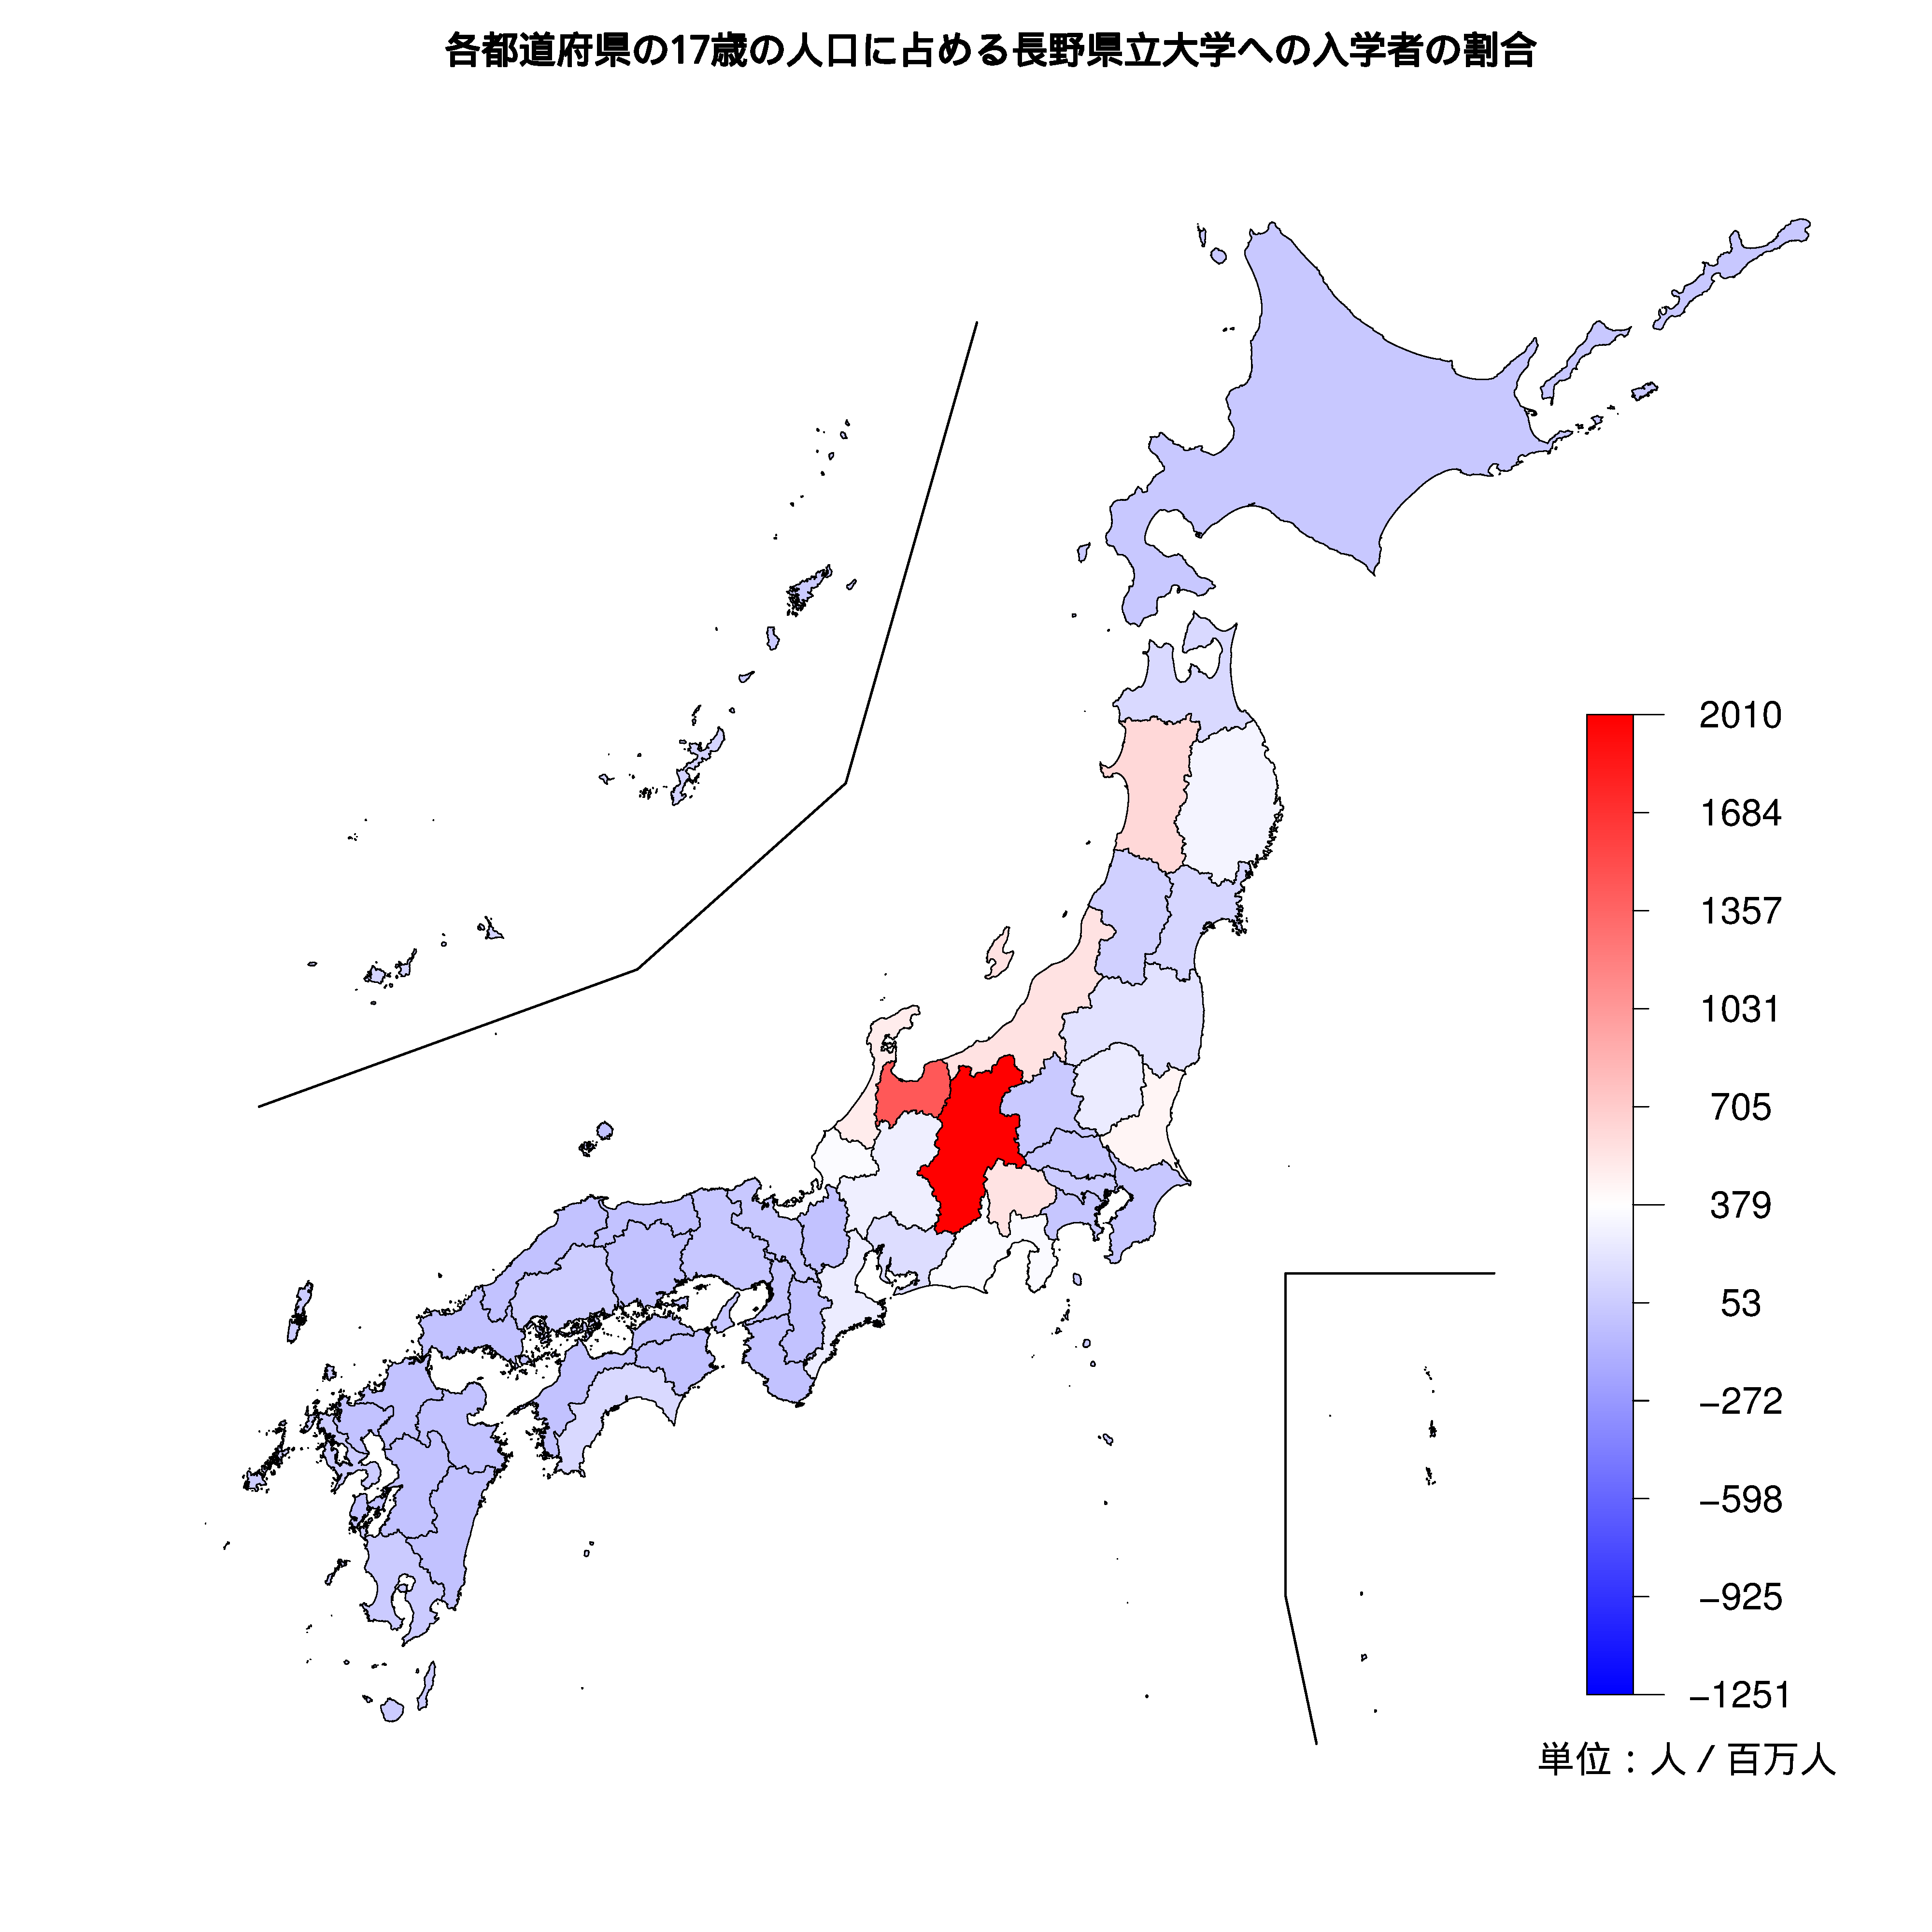 長野県立大学への入学者が多い都道府県の色分け地図